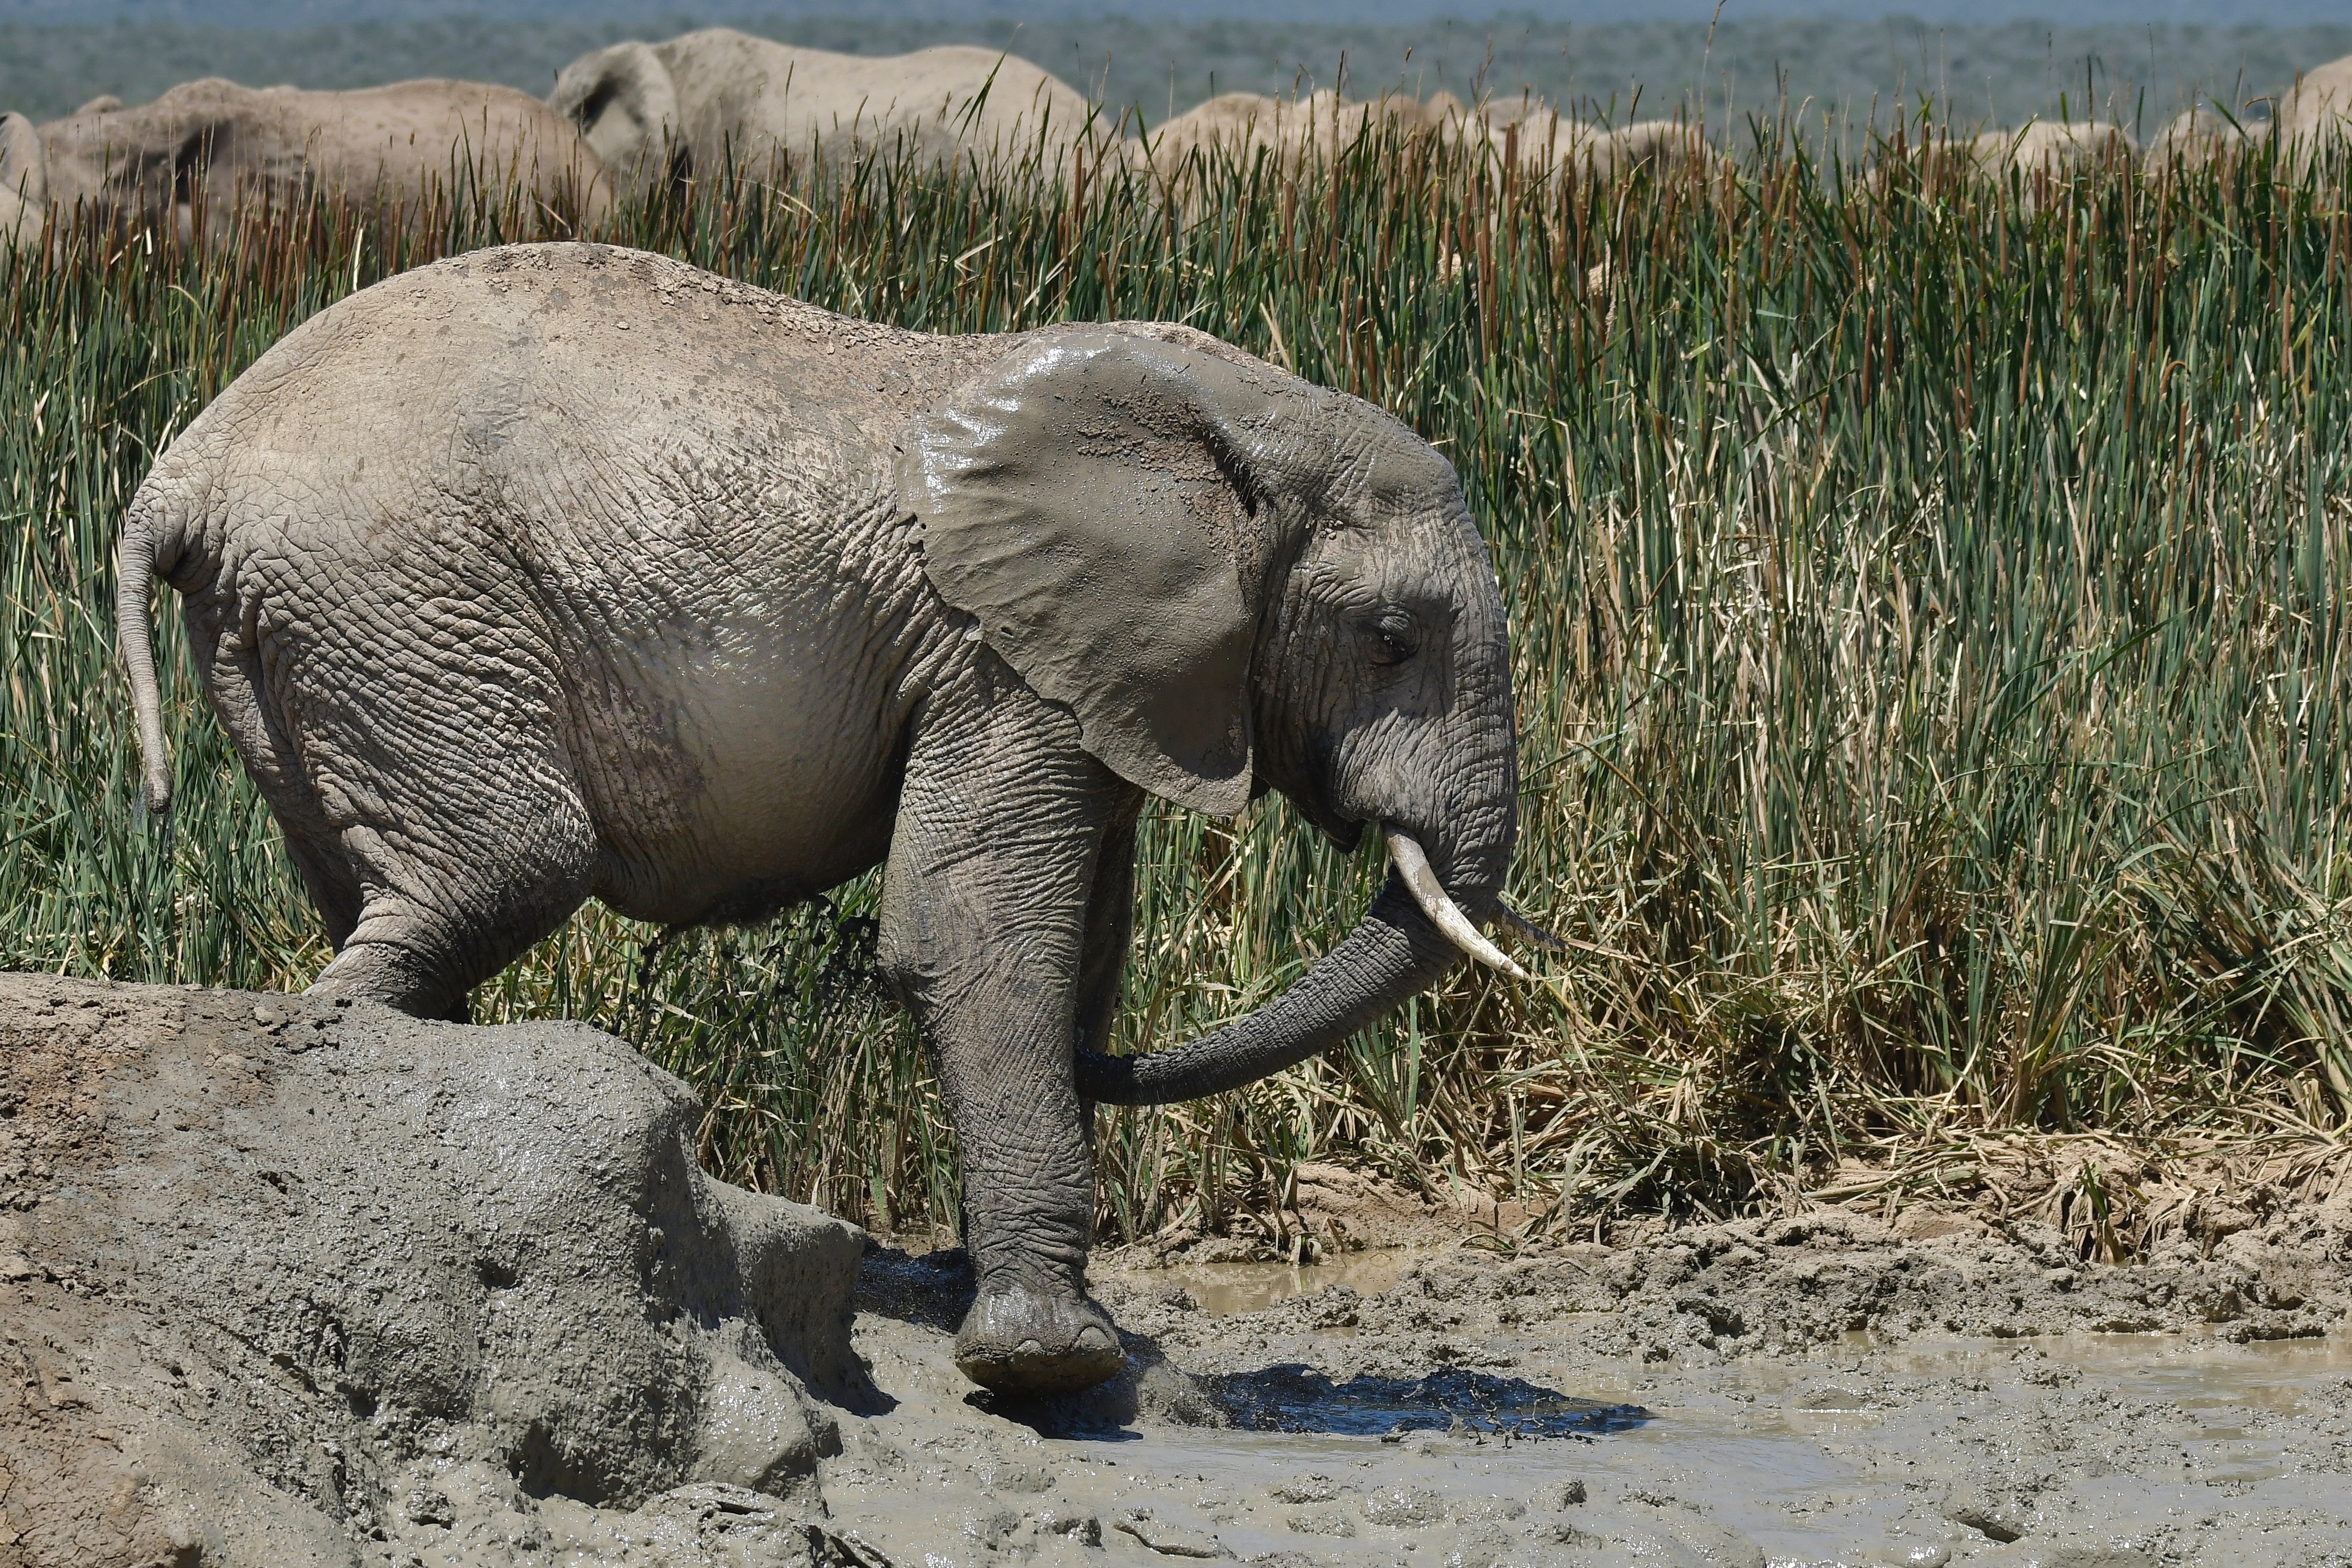 Elephant Walks on Puddle, Animal, Large, Wild animal, Wild, HQ Photo